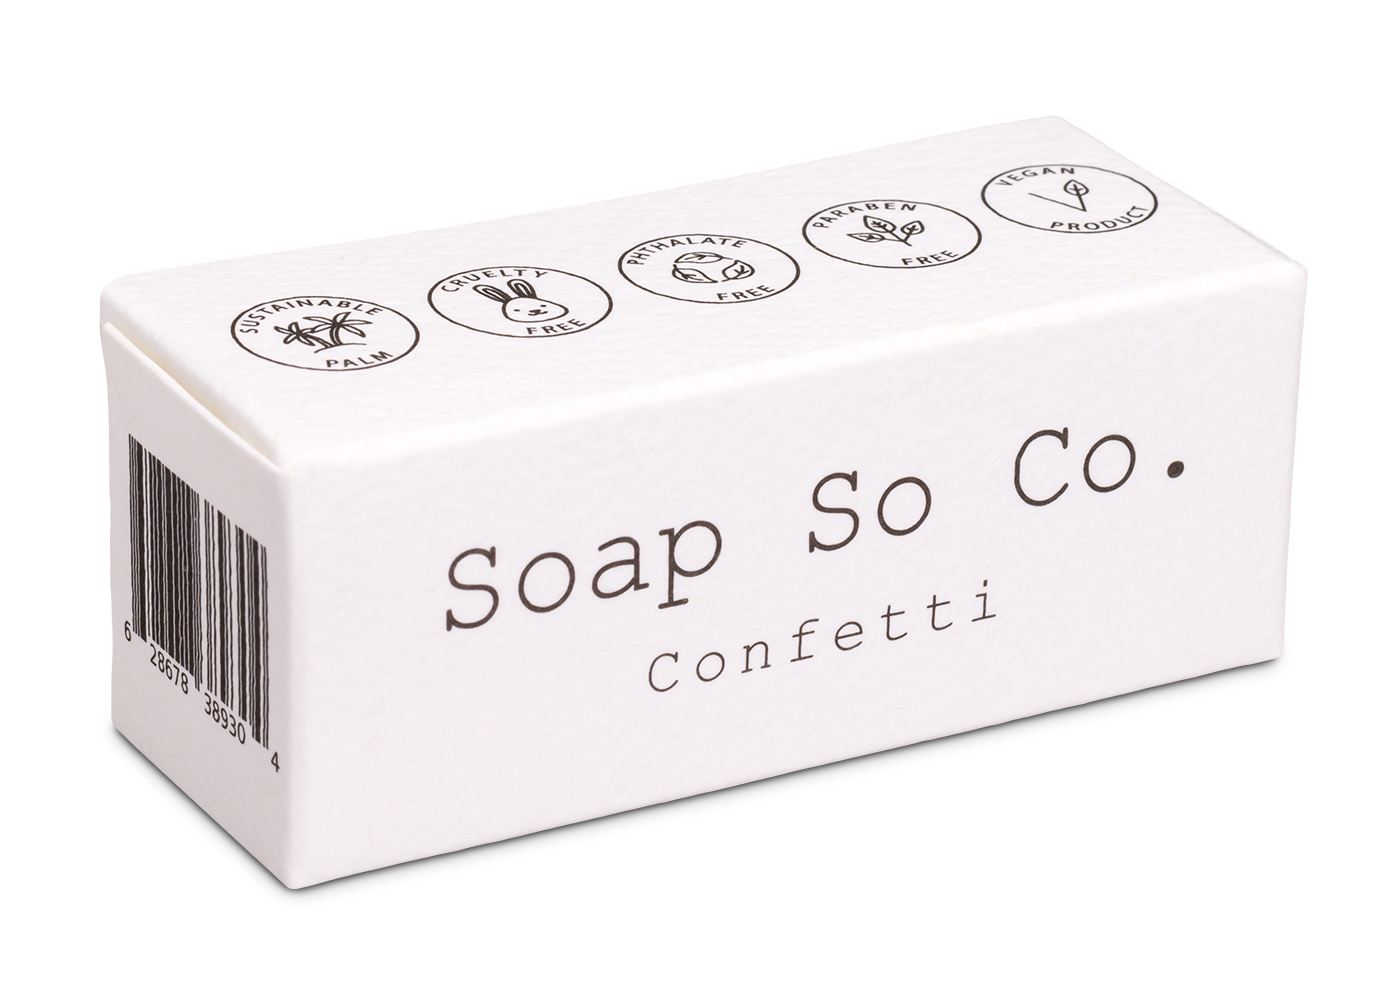 CONFETTI - MINI - Soap So Co.